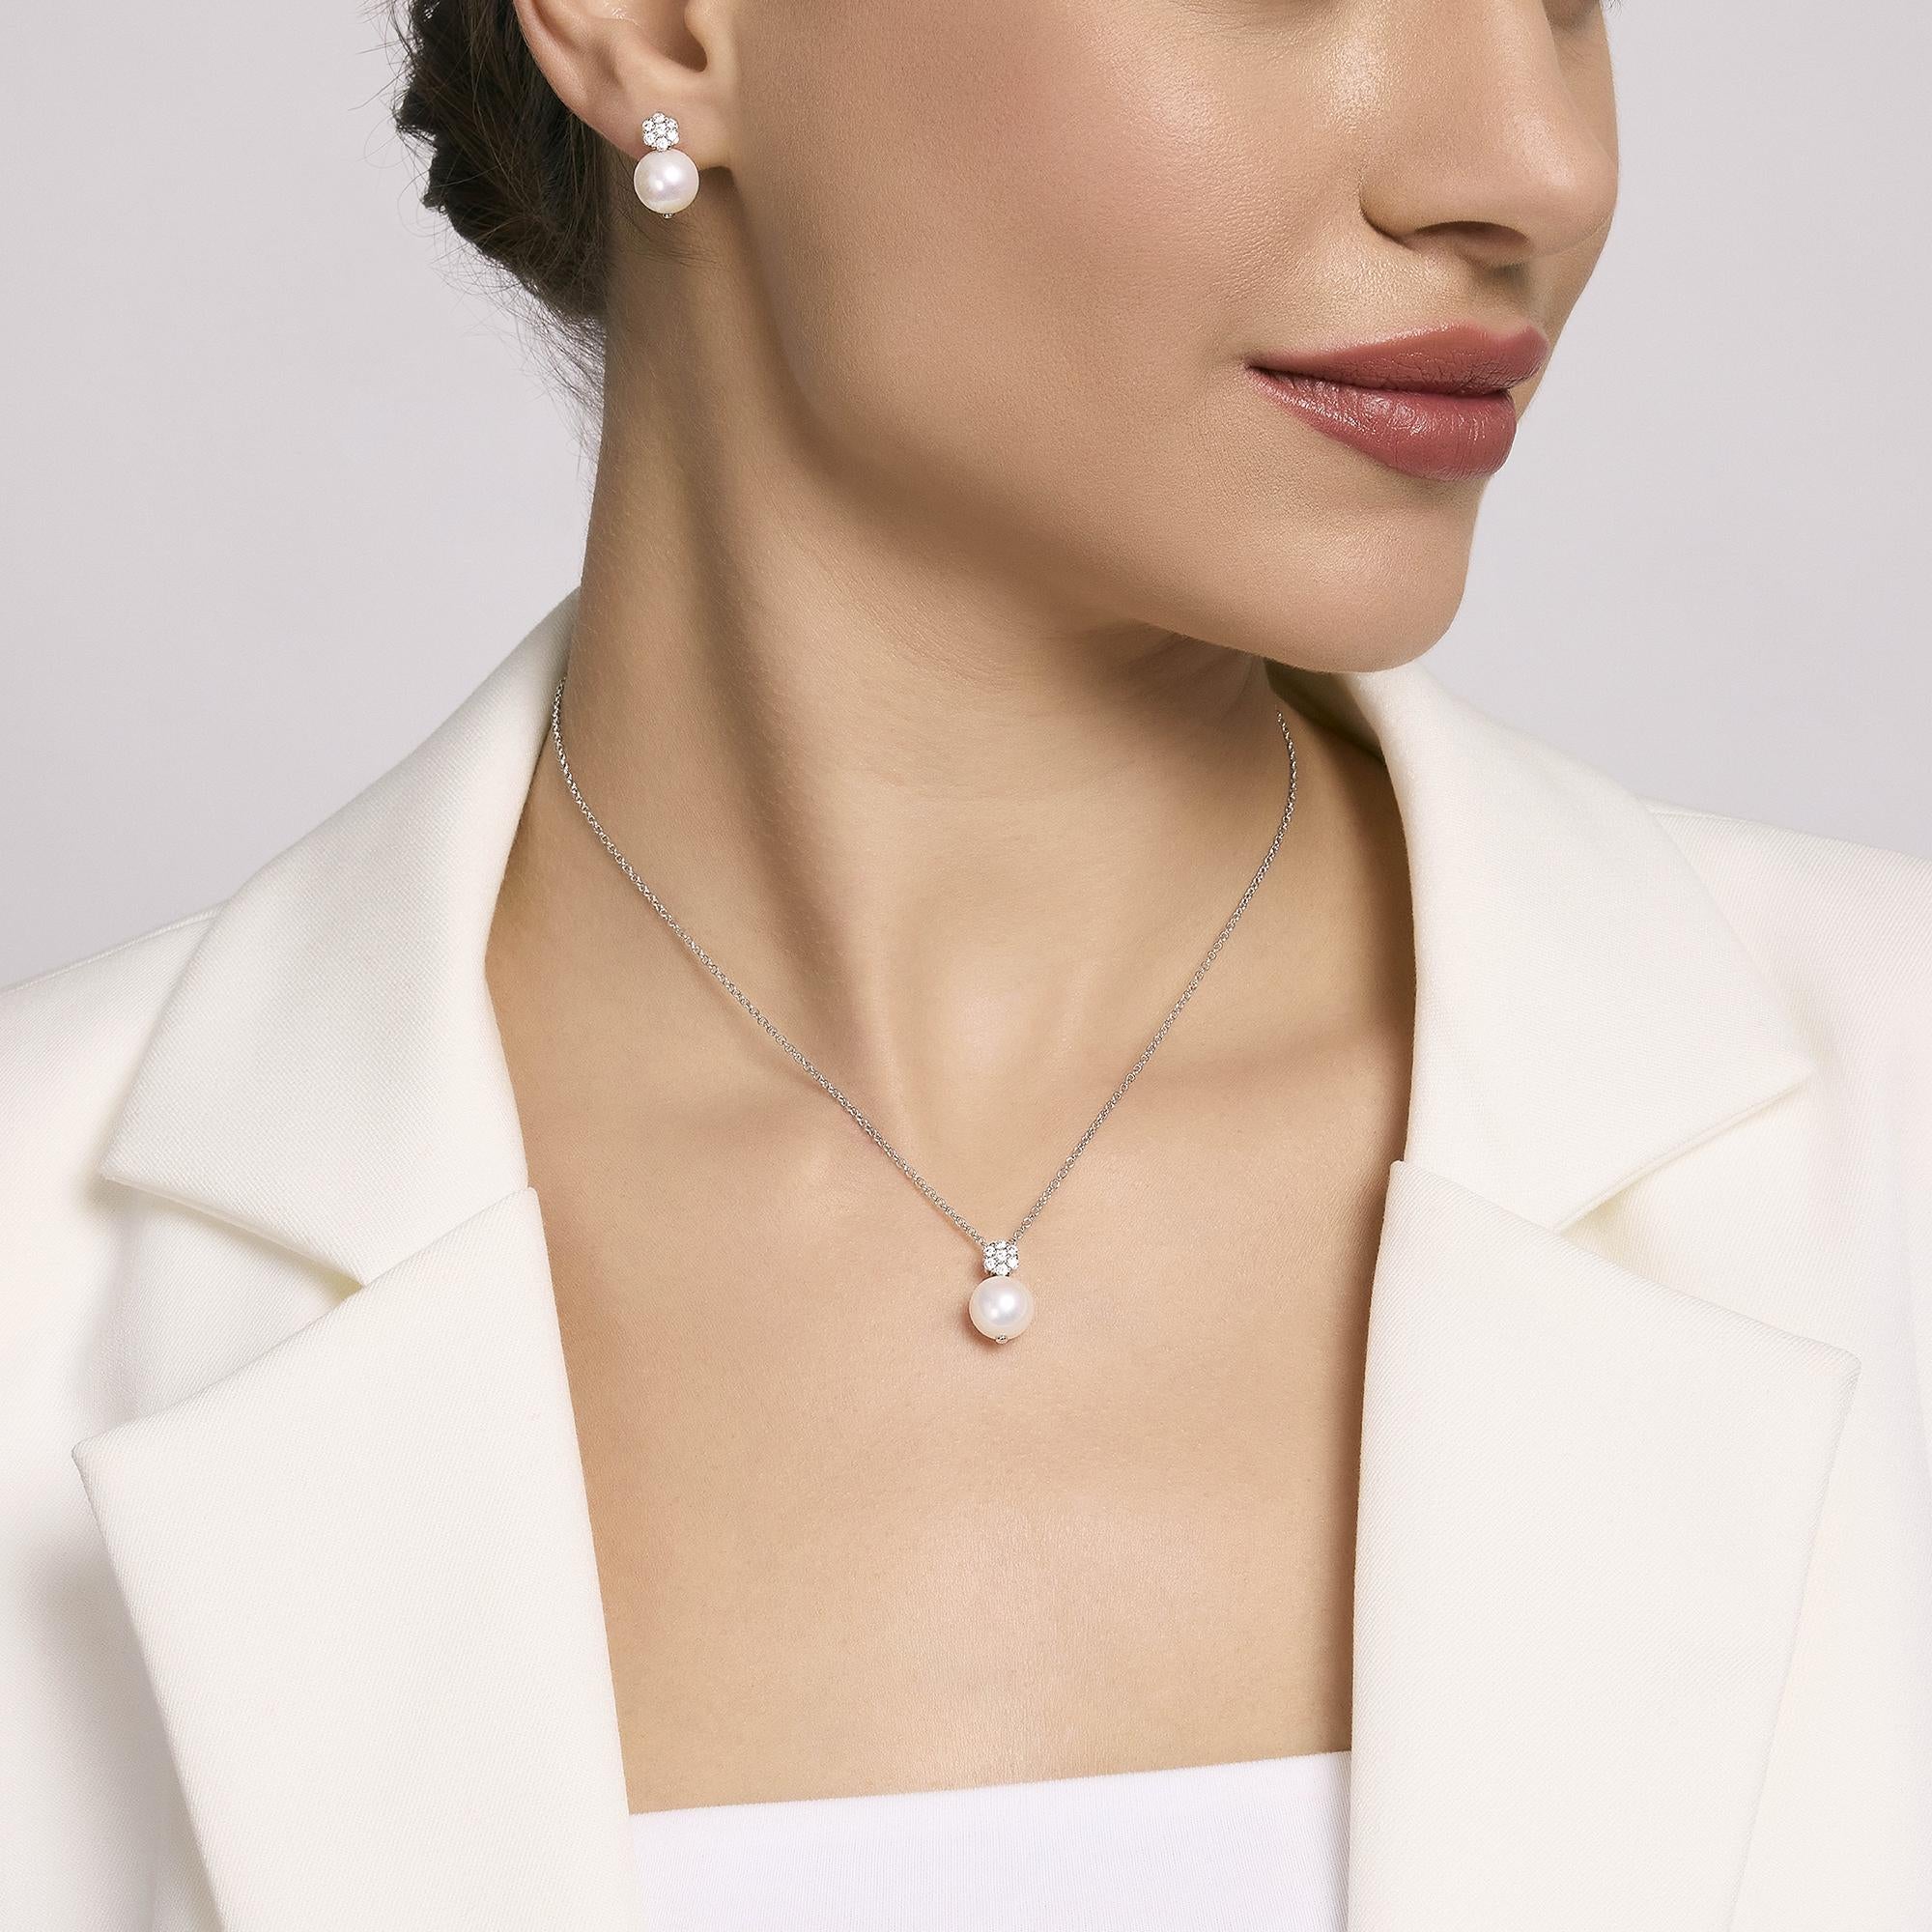 Mabina Donna - Girocollo in argento con perla coltivata FIOR FIORE - 553546